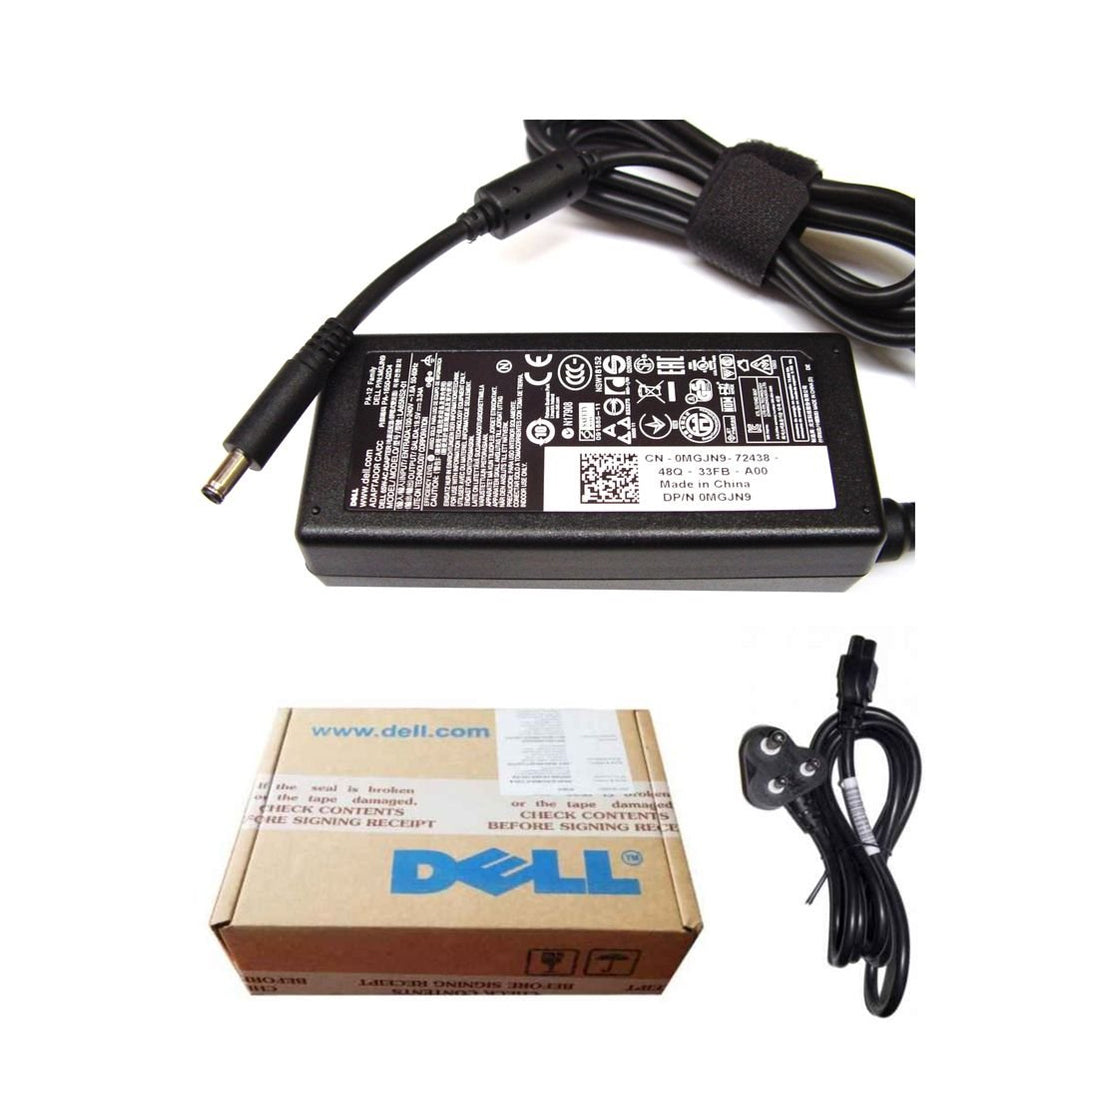 Dell ओरिजिनल 65W 19.5V 4.5mm पिन लैपटॉप चार्जर अडैप्टर Inspiron 14 7437 के लिए पावर कॉर्ड के साथ